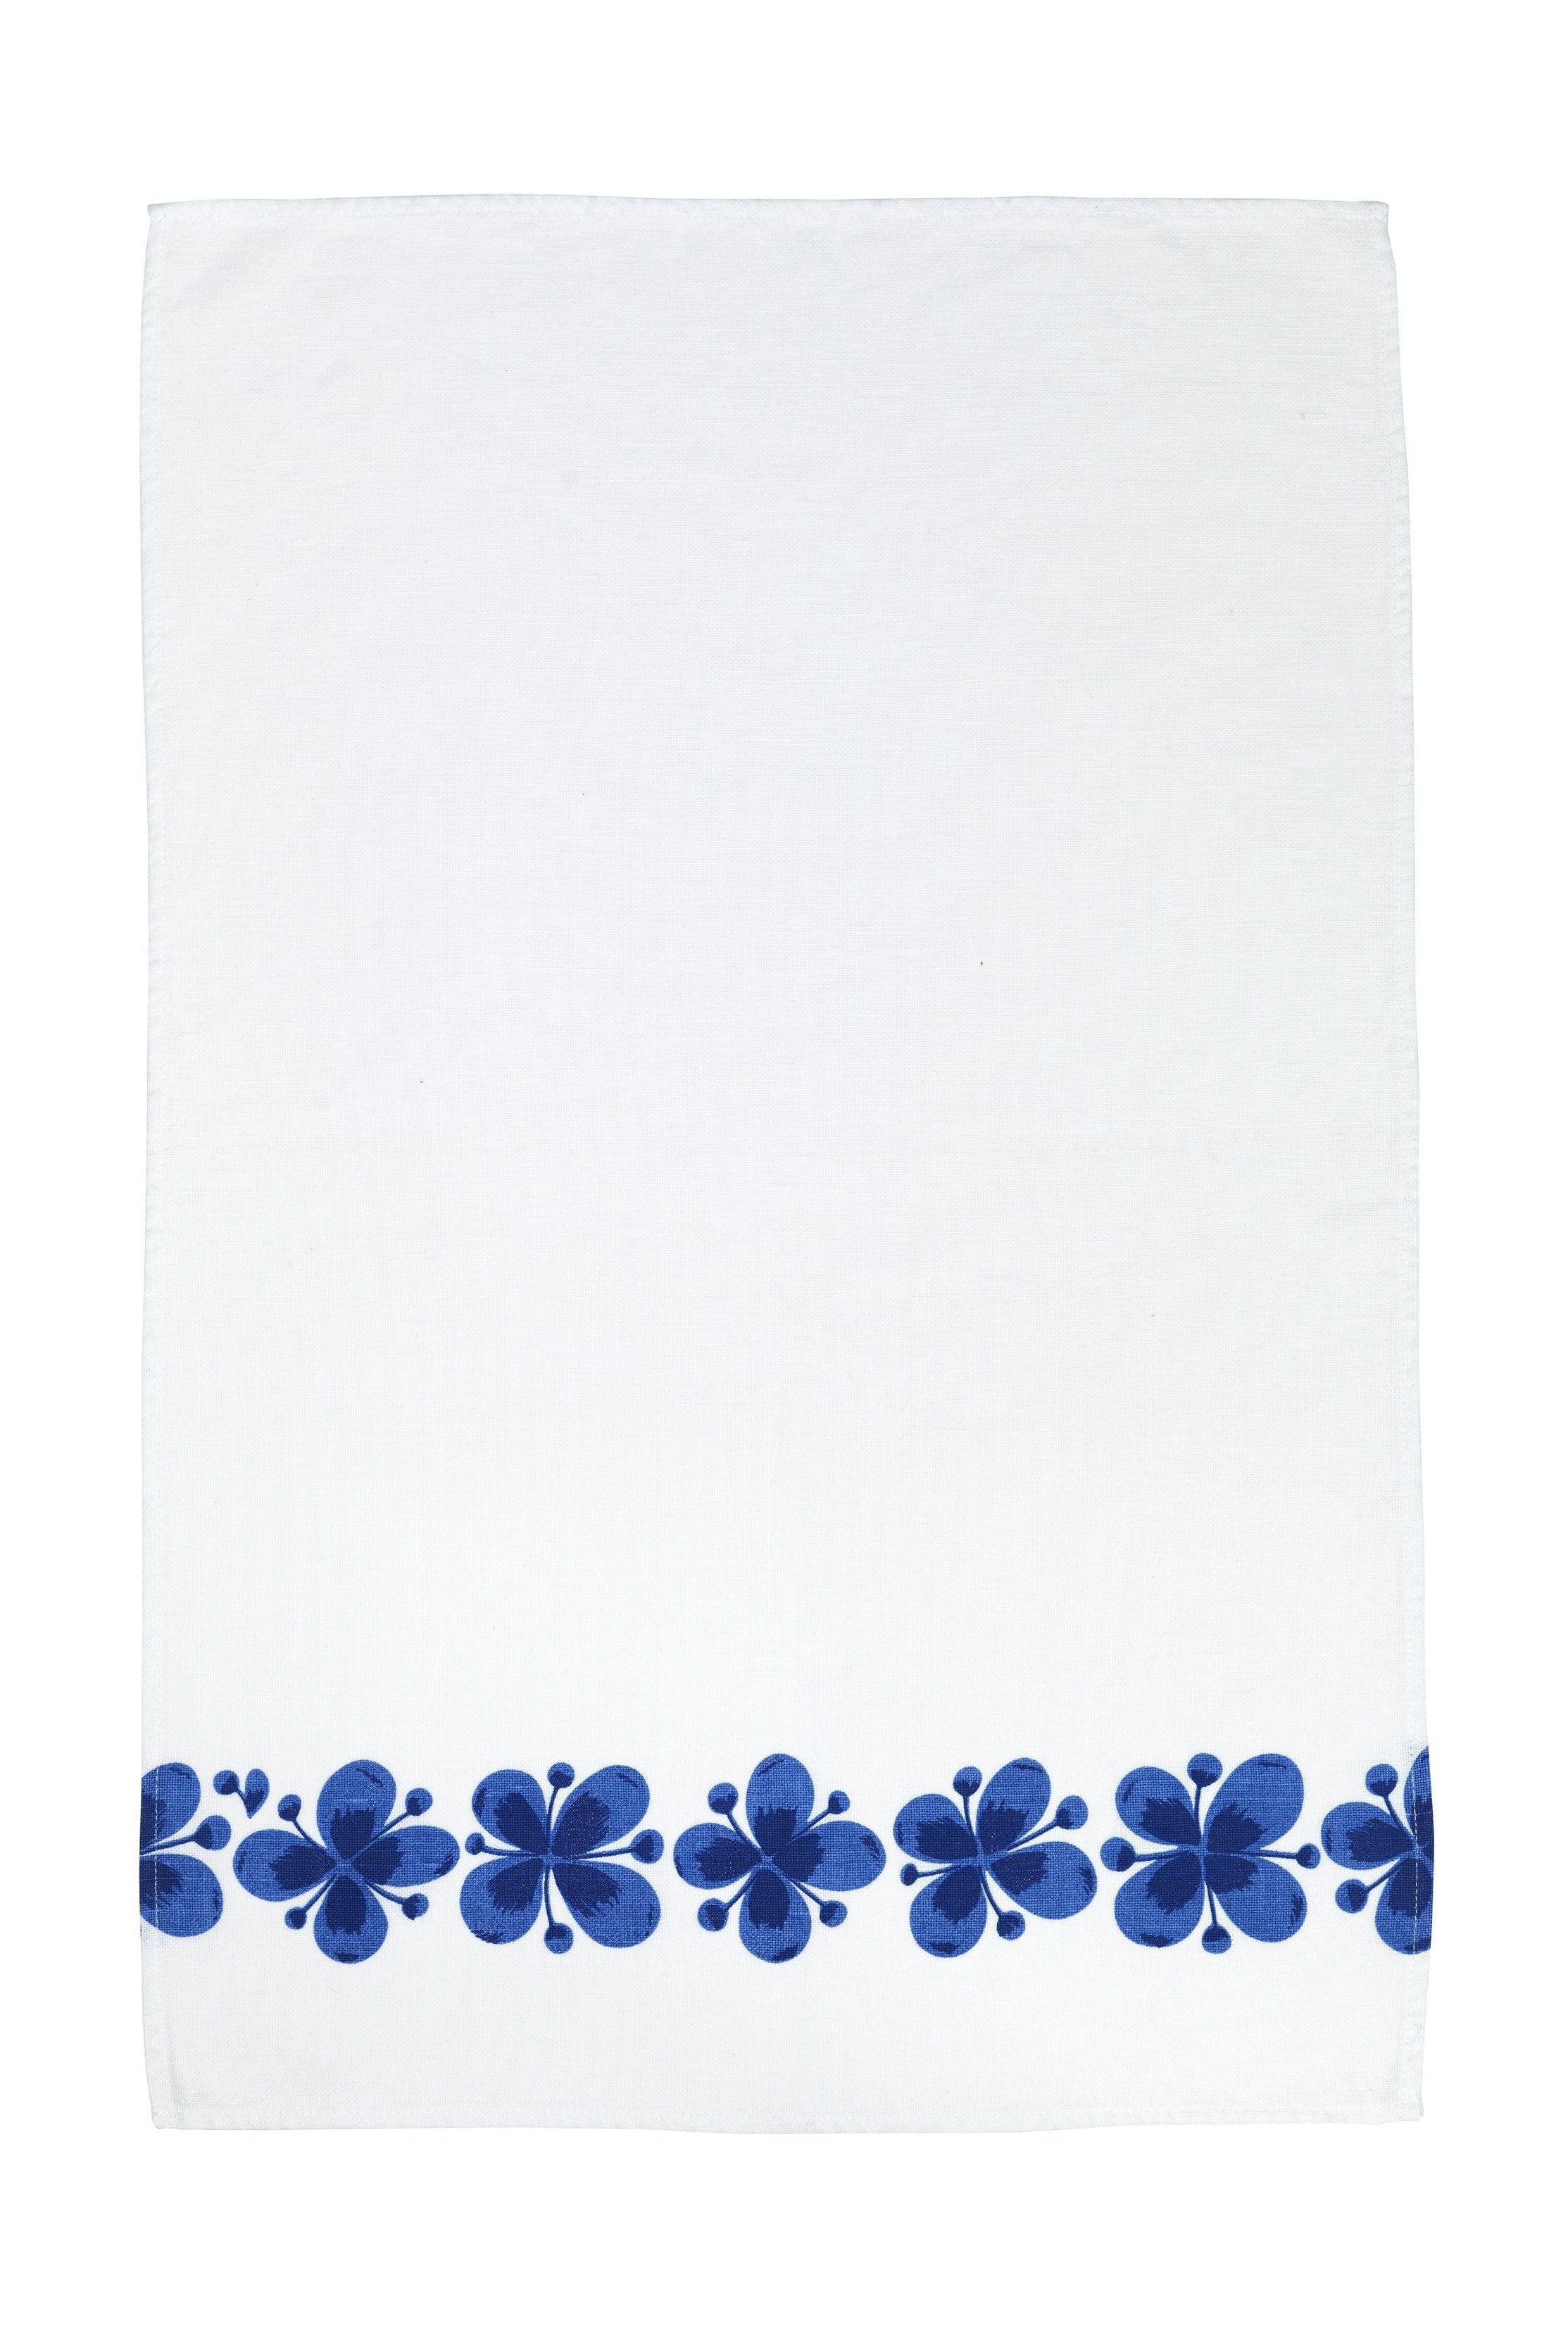 Rörstrand Mon Amie håndklæde 43 x67 cm